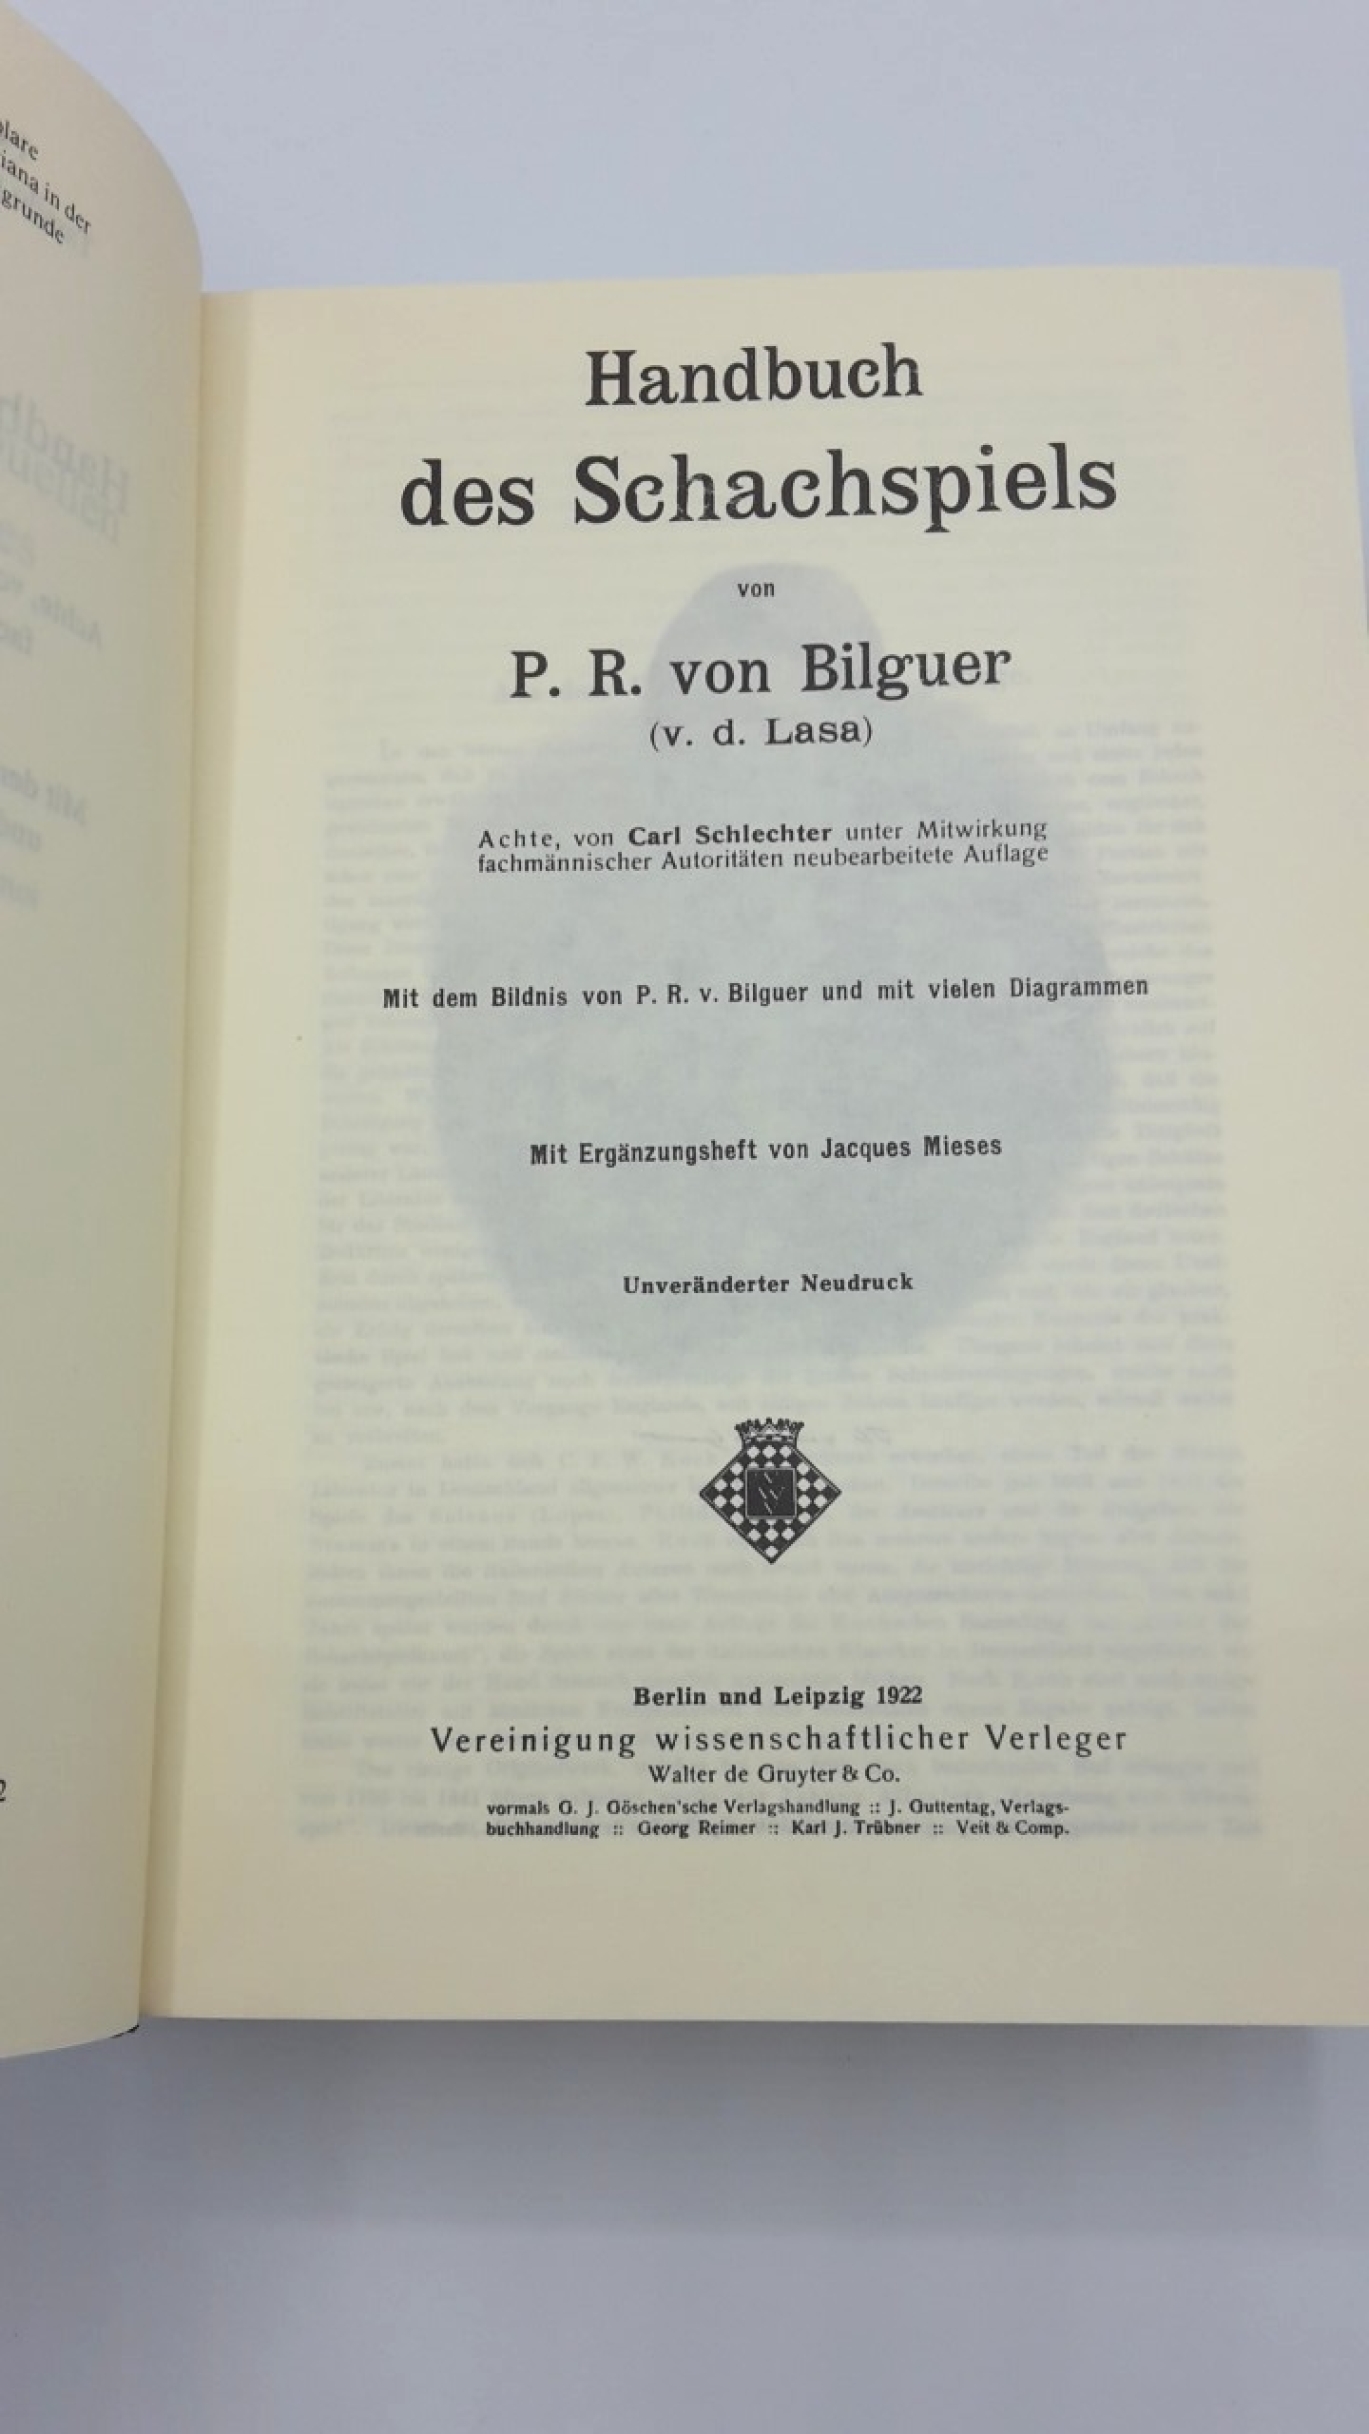 Bilguer, Paul Rudolf von: Handbuch des Schachspiels 